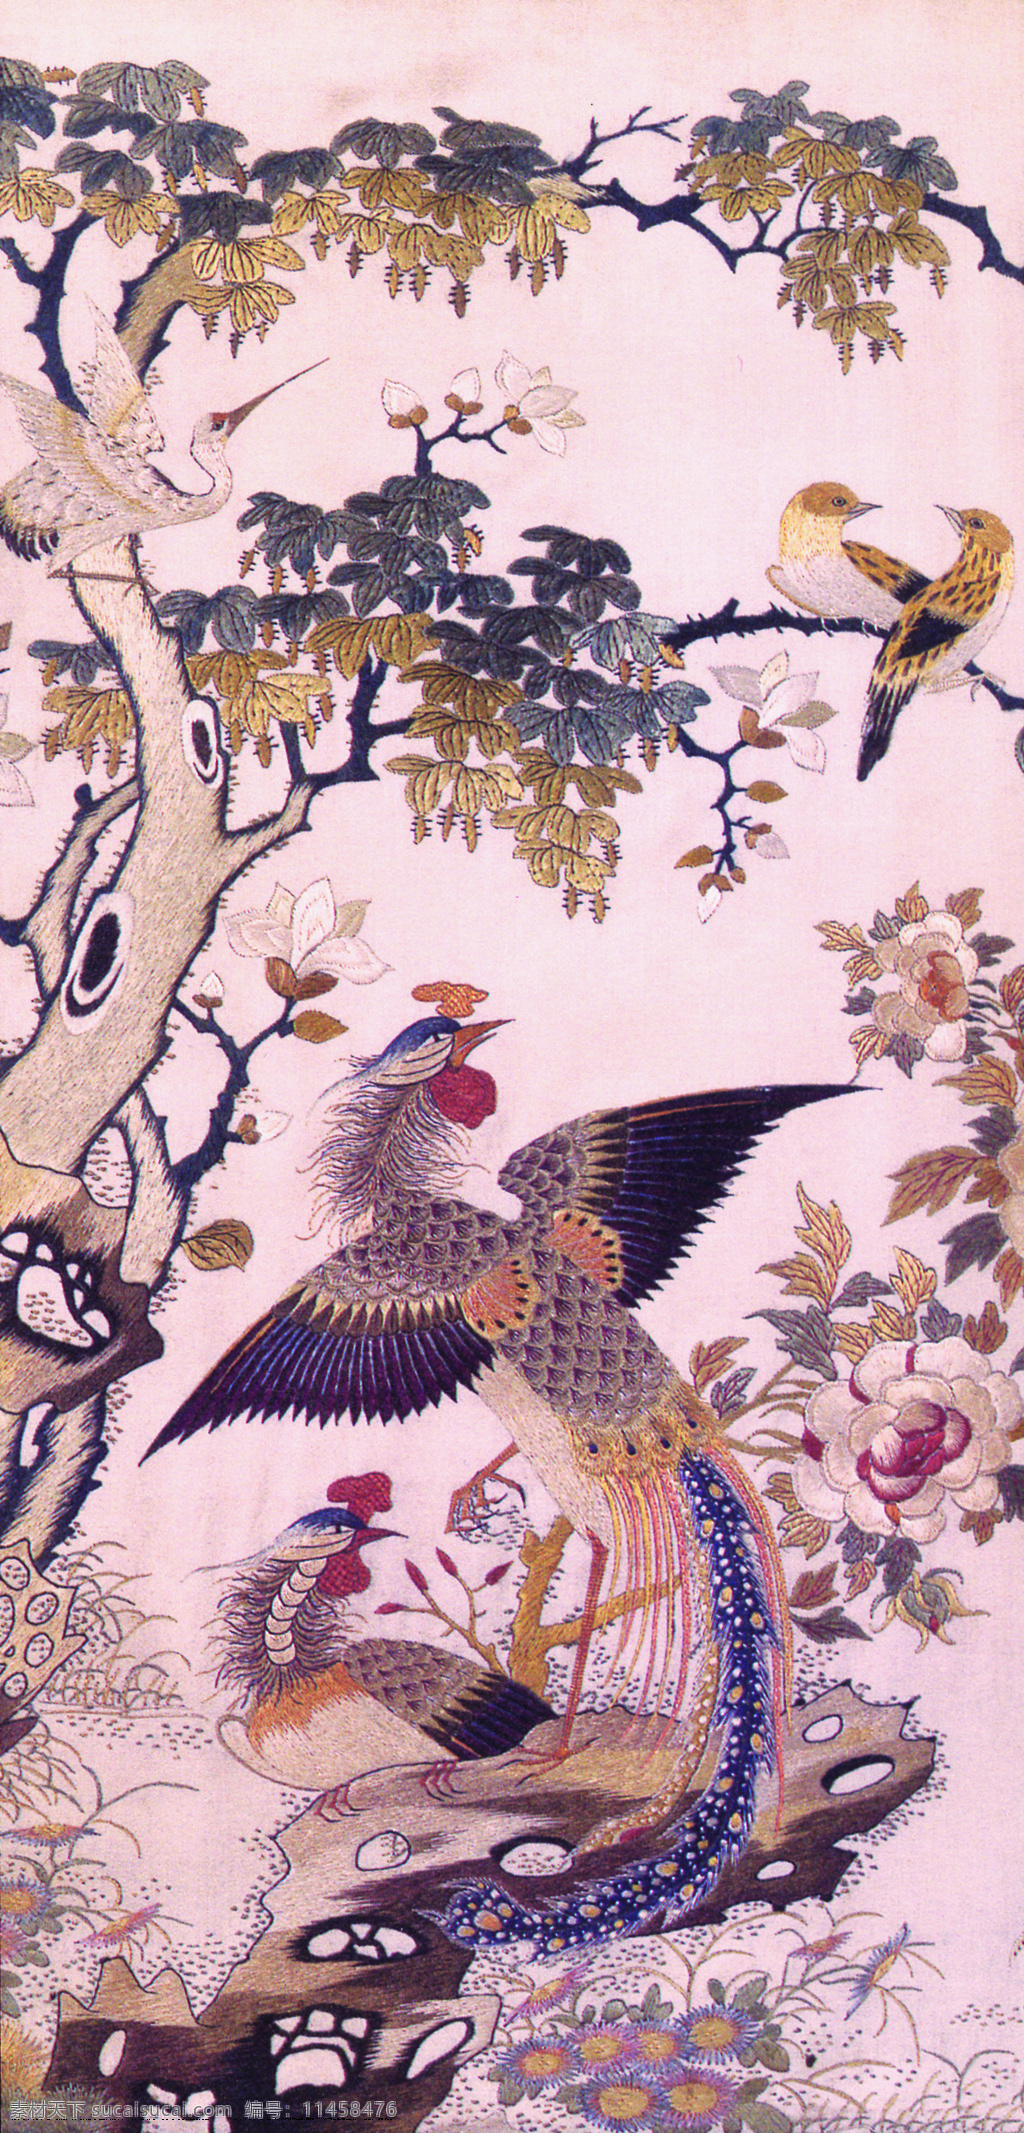 中国花鸟画 中国画 花鸟画 设计素材 花鸟画篇 中国画篇 书画美术 粉色